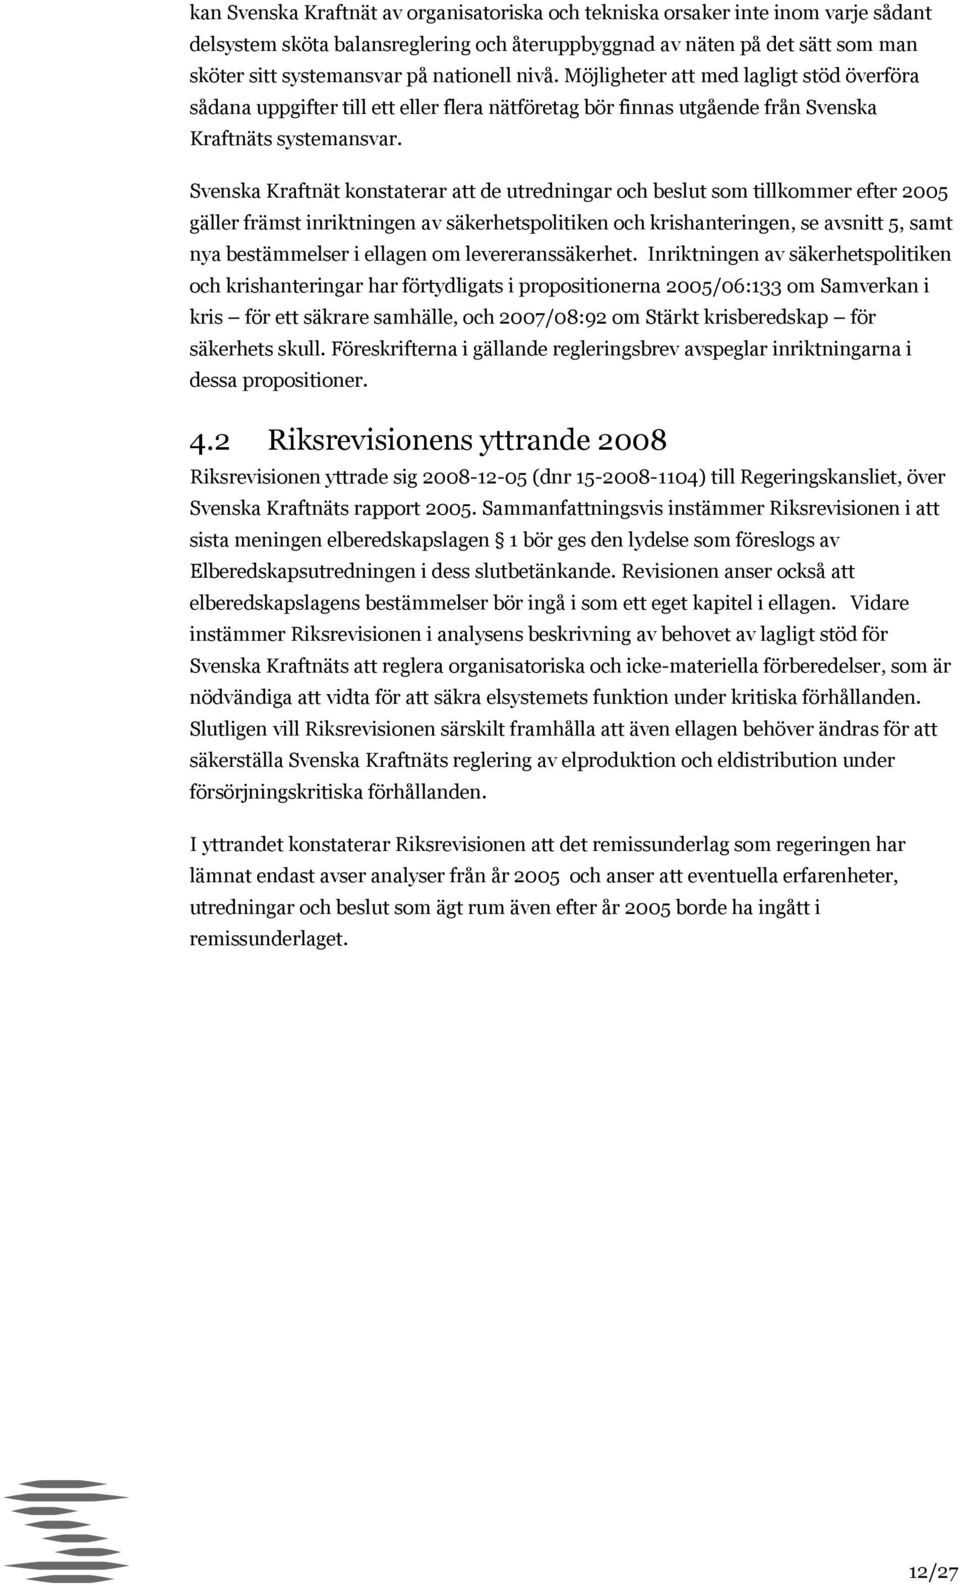 Svenska Kraftnät konstaterar att de utredningar och beslut som tillkommer efter 2005 gäller främst inriktningen av säkerhetspolitiken och krishanteringen, se avsnitt 5, samt nya bestämmelser i